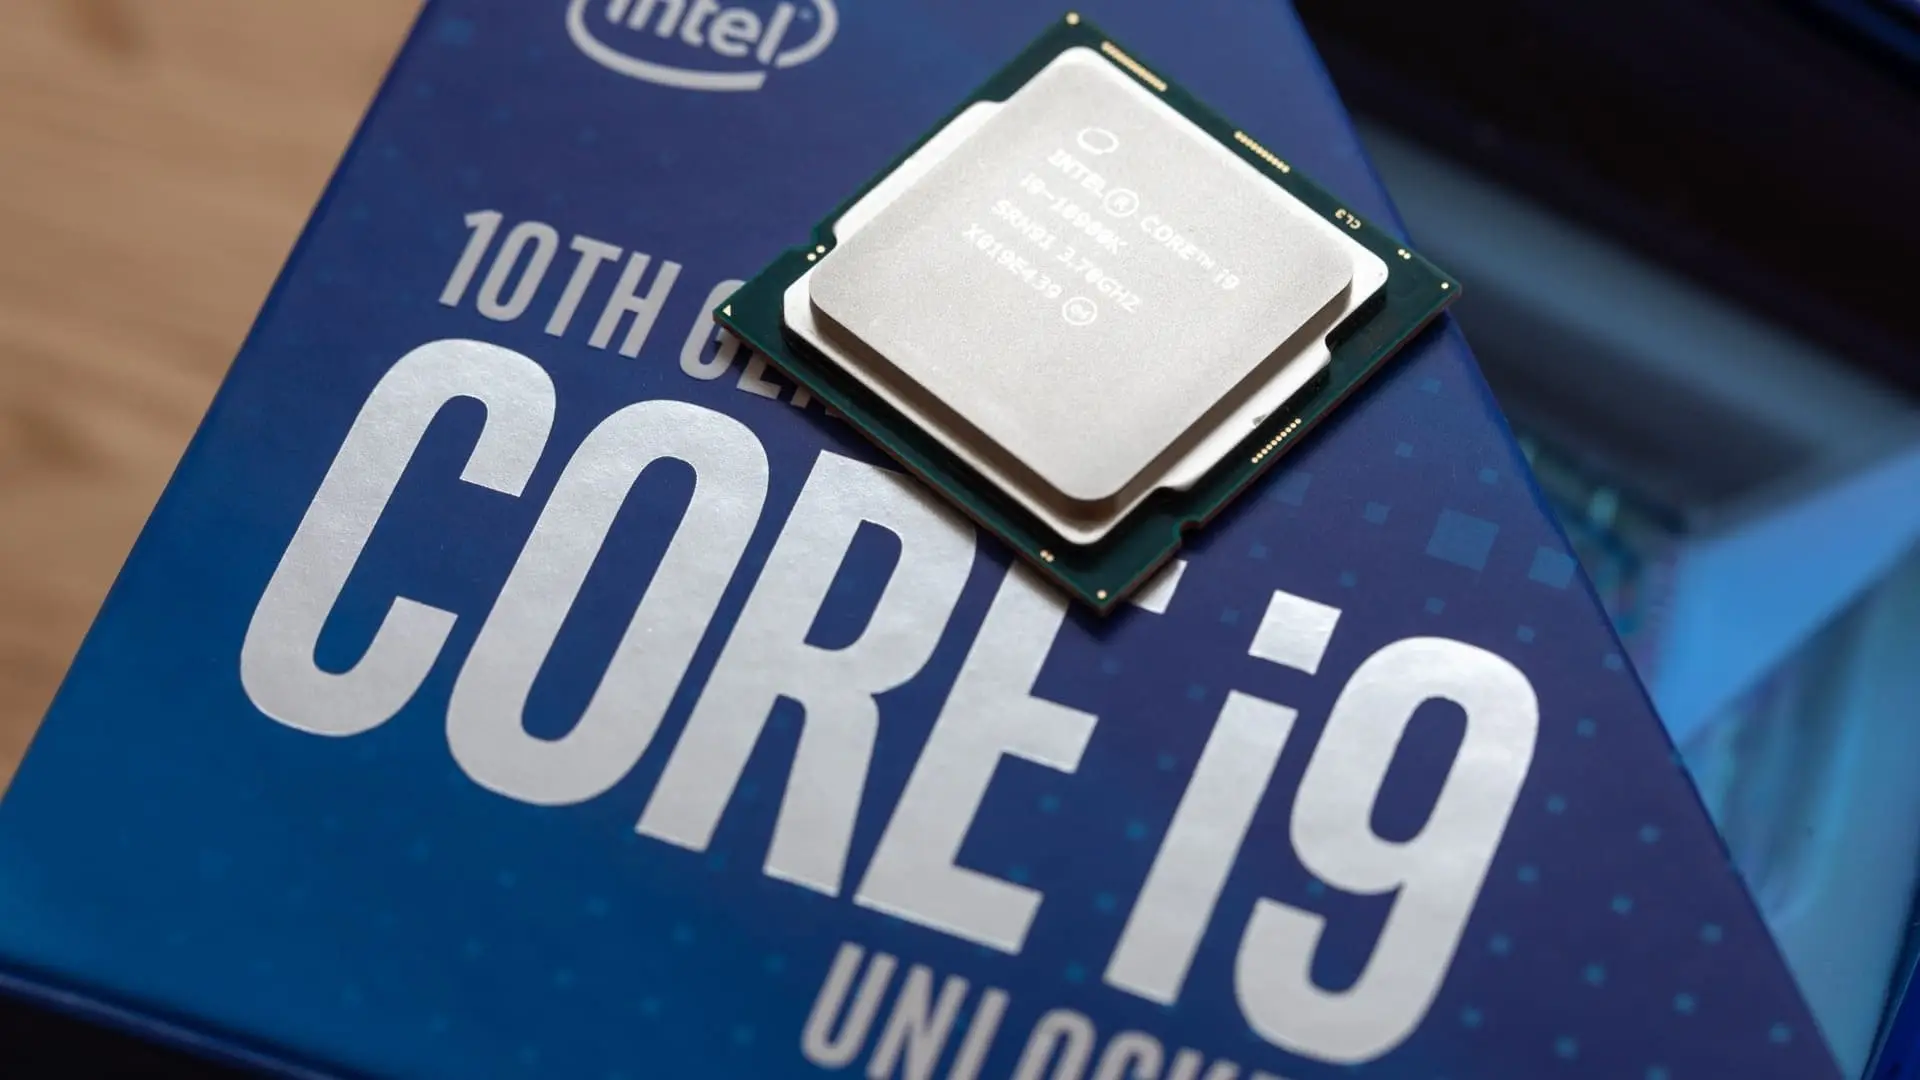 Processador i9: saiba tudo sobre a linha superpoderosa da Intel